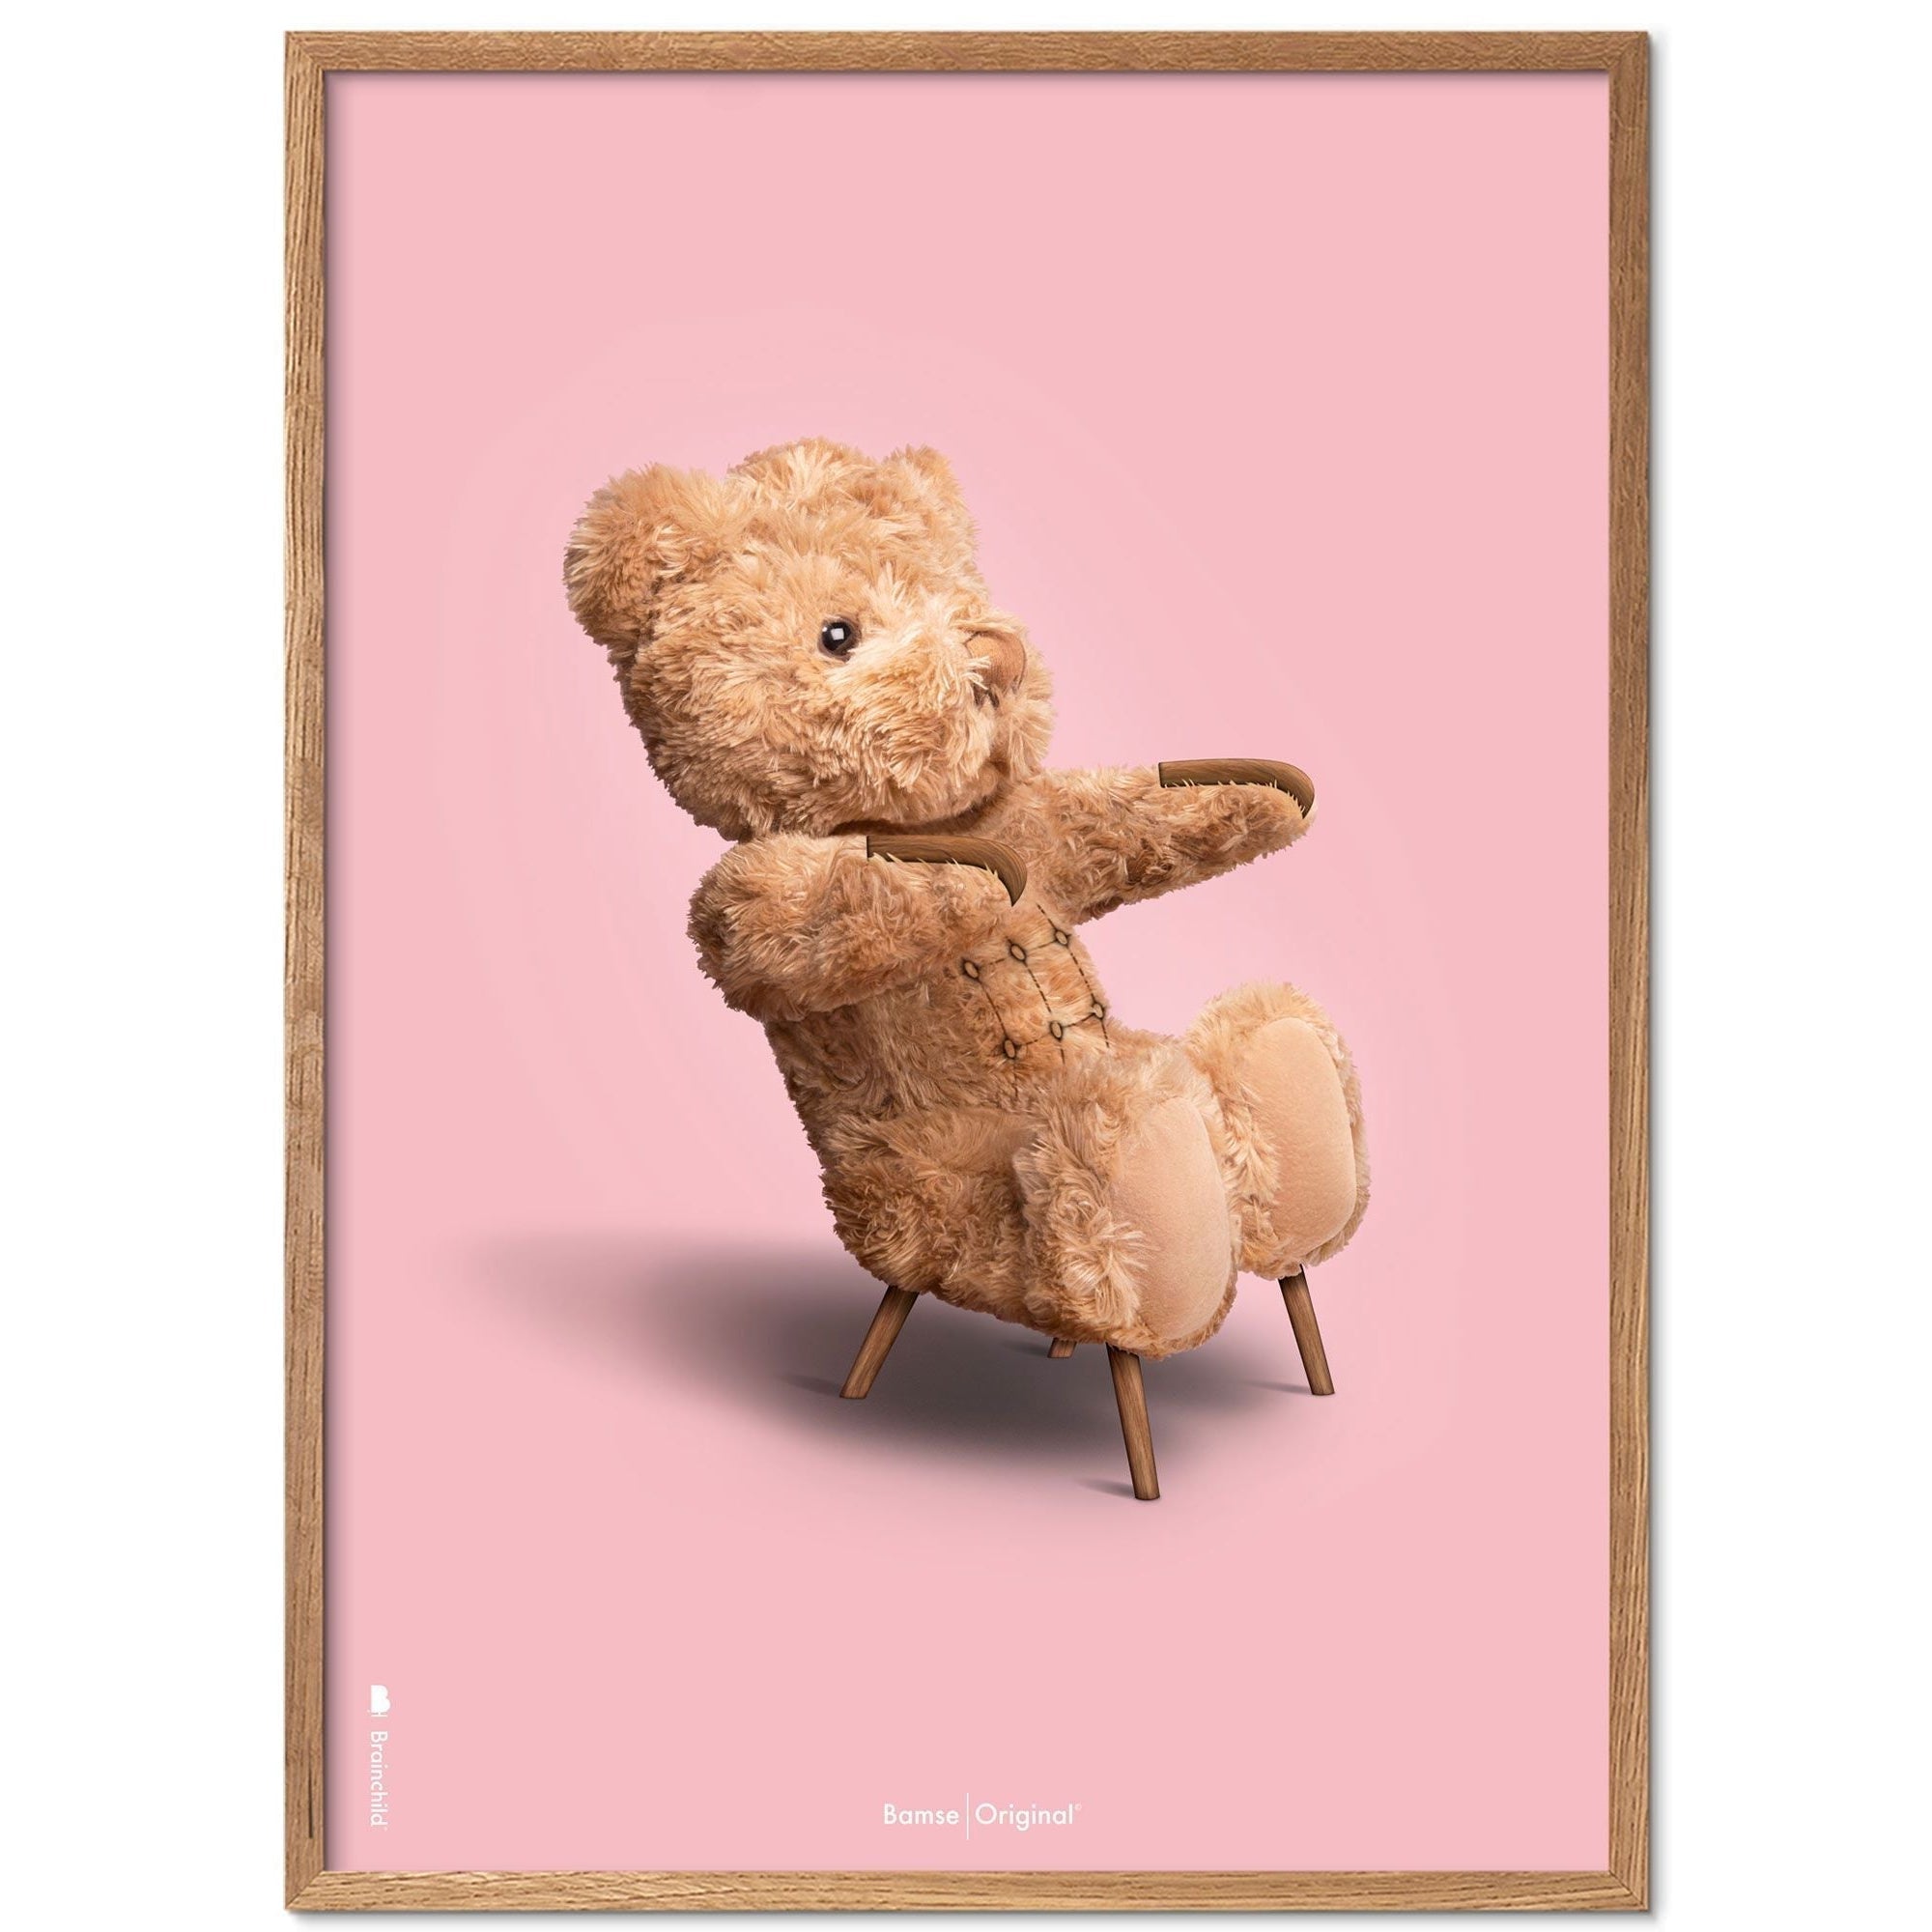 Brainchild Teddybeer klassieke poster licht houten frame ramme a5, roze achtergrond